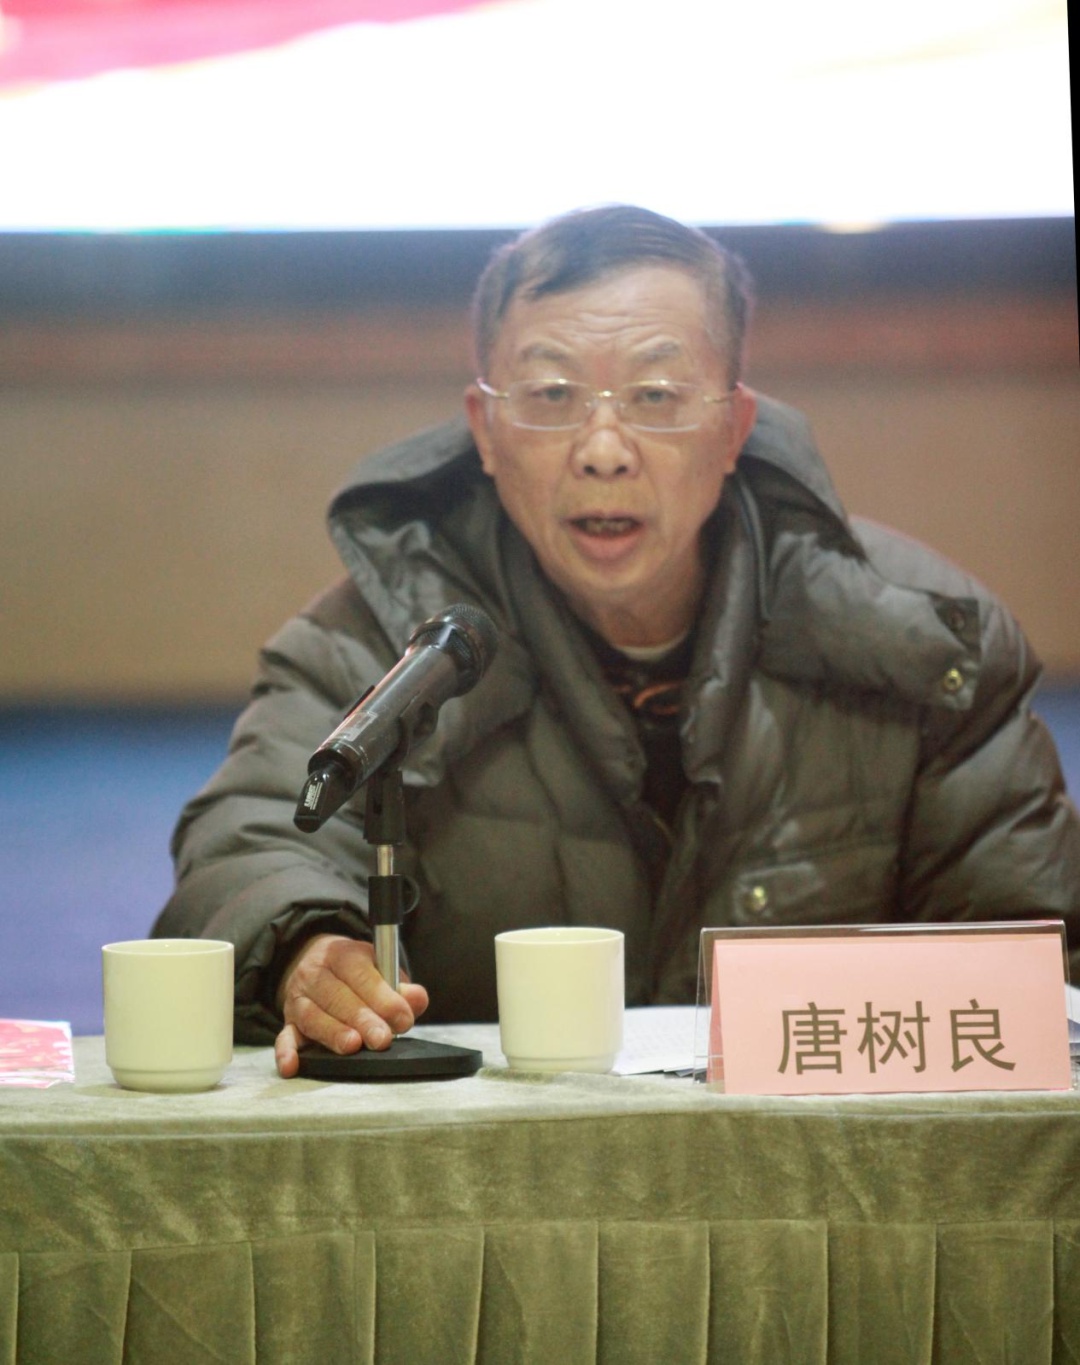 奋进新时代 · 担当新使命——锦江区书法家协会召开2021年度工作总结会